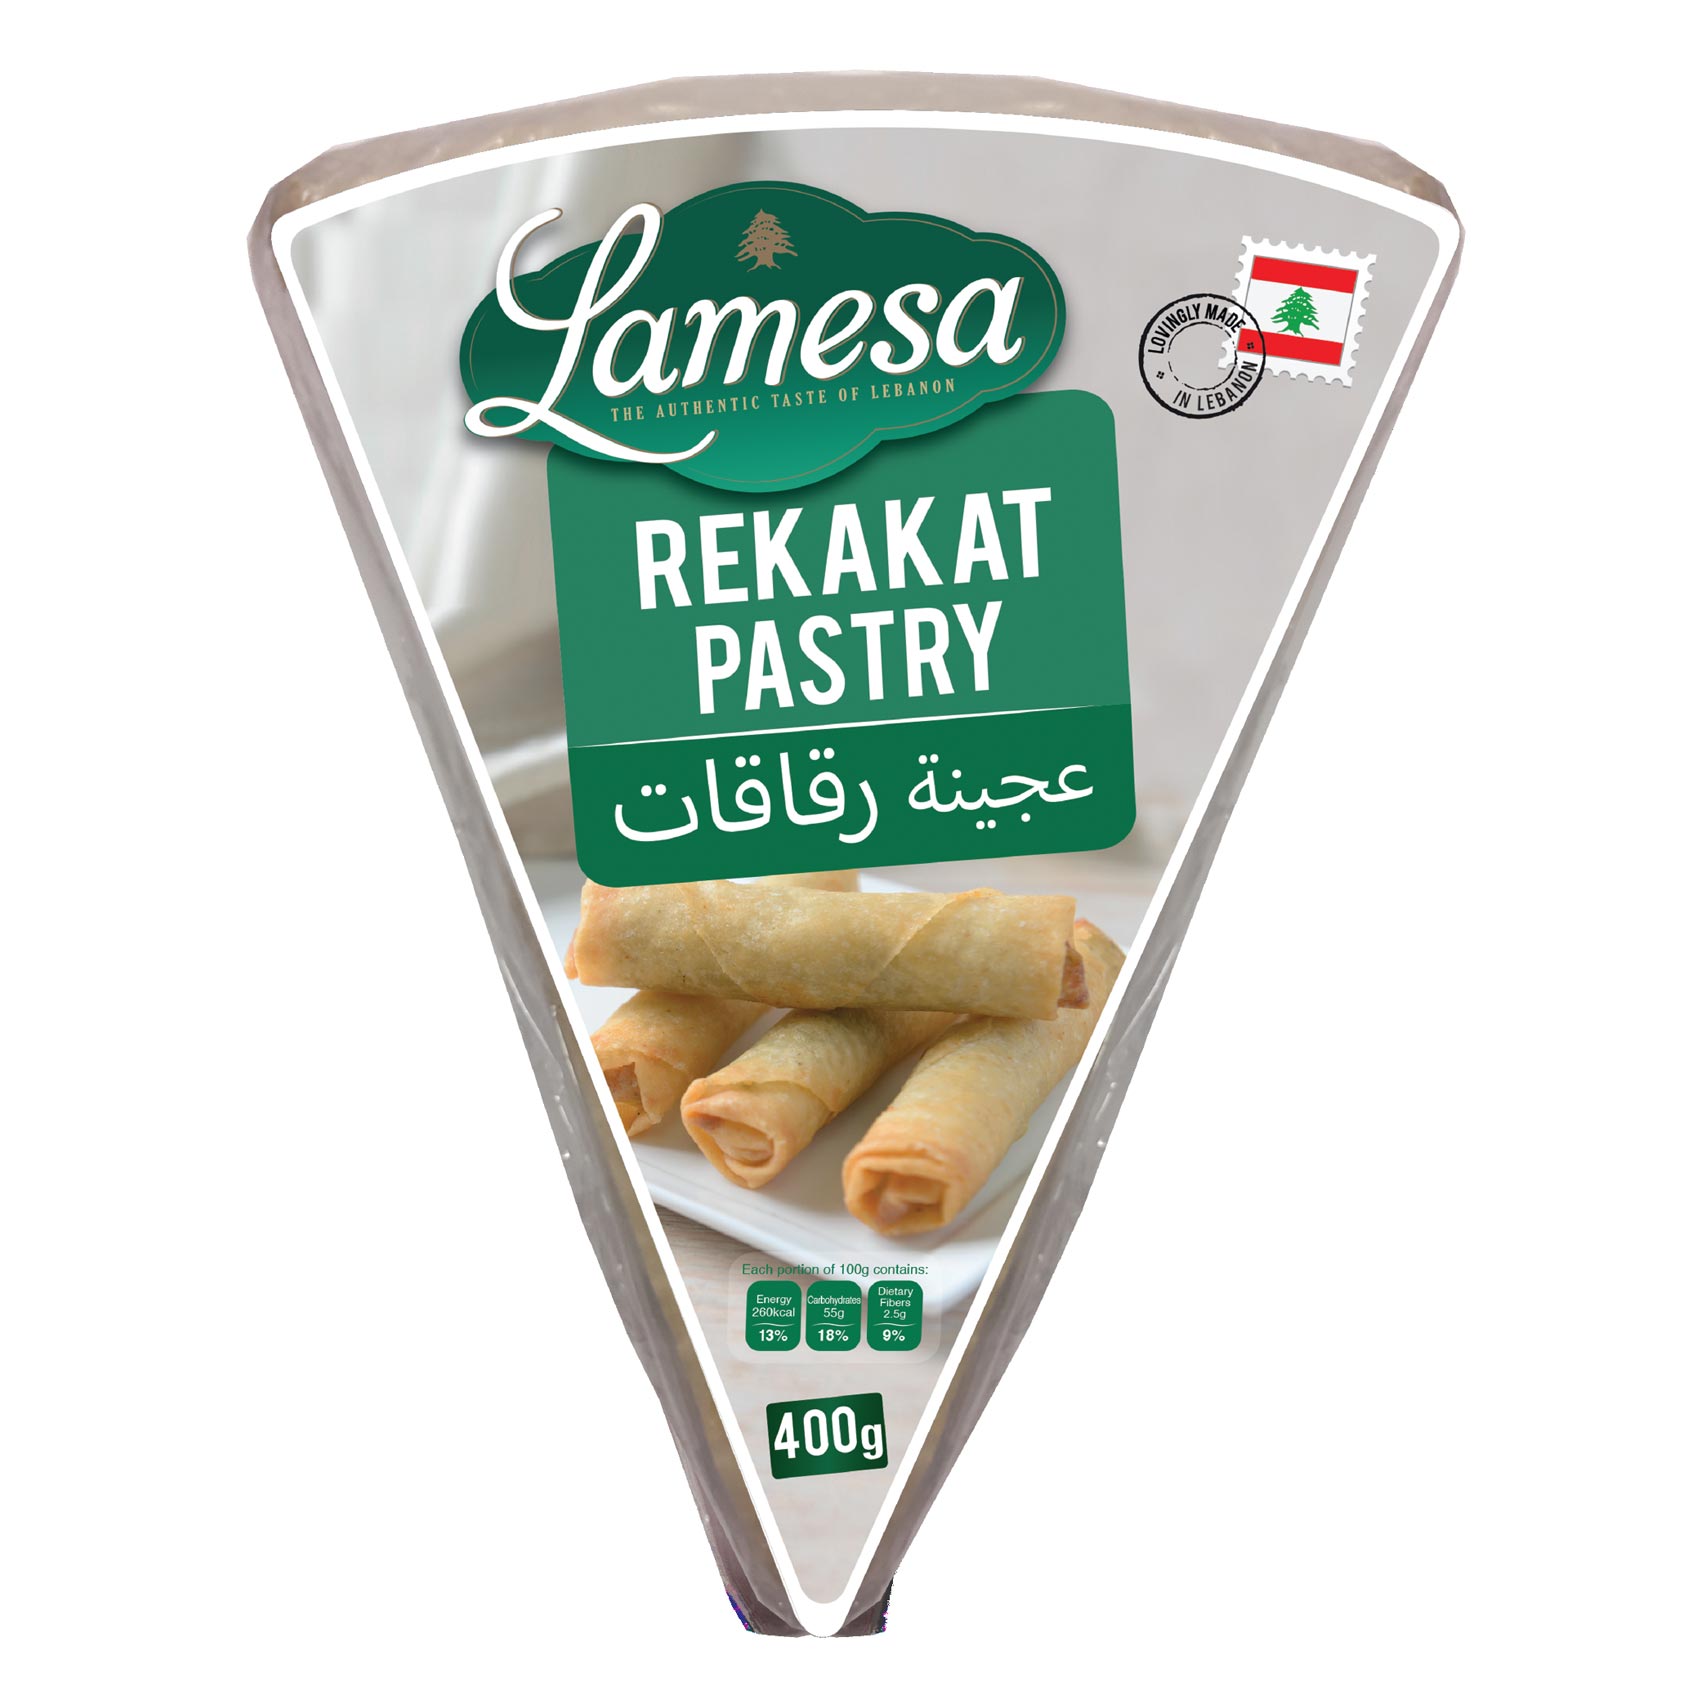 Lamesa Rekakat Pastry Sheet 400GR